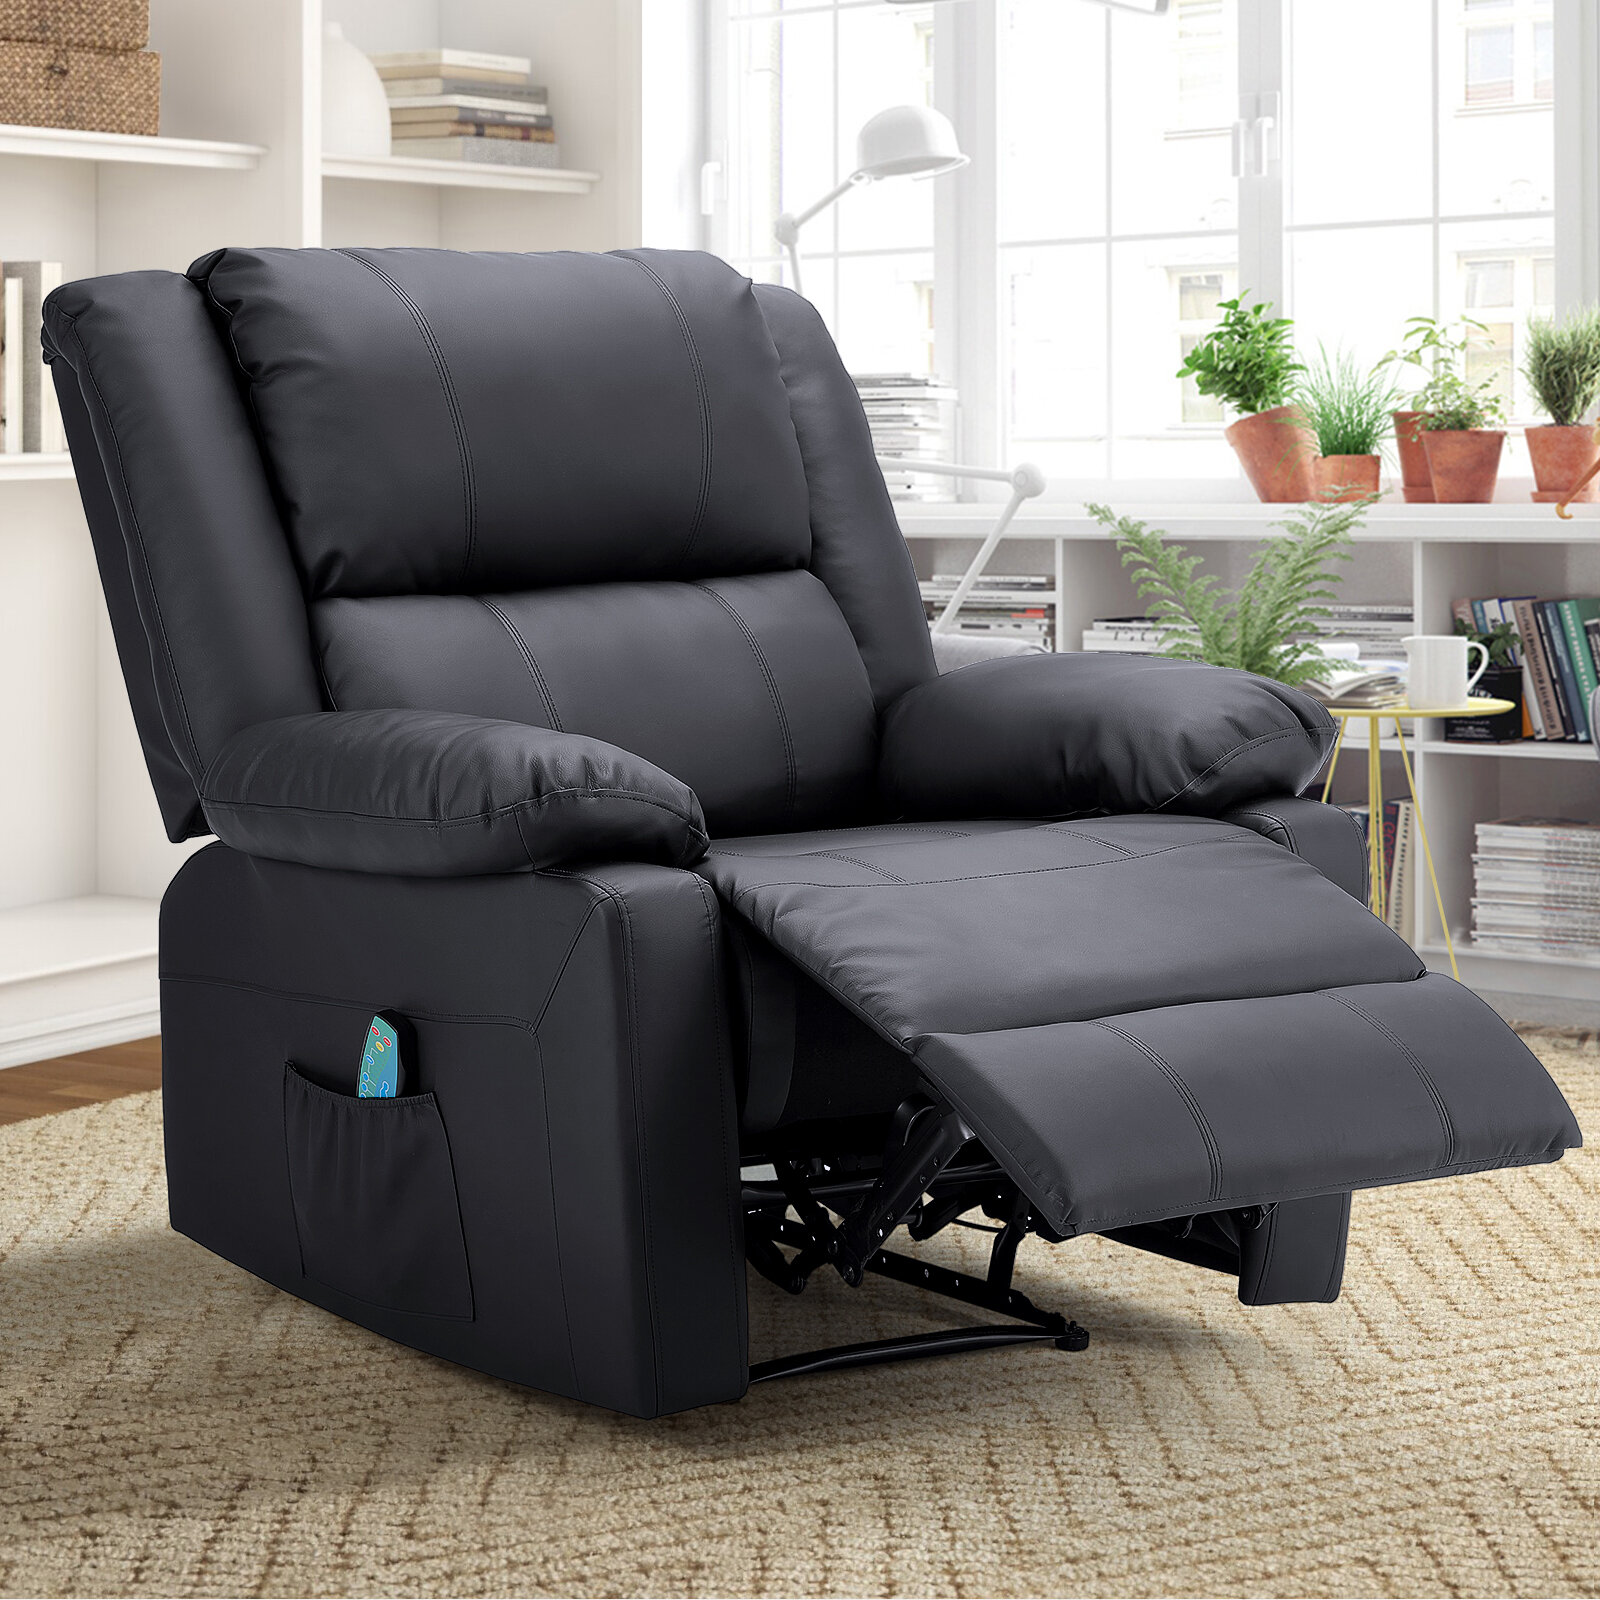 https://assets.wfcdn.com/im/31449348/compr-r85/1728/172806435/power-reclining-heated-massage-chair.jpg